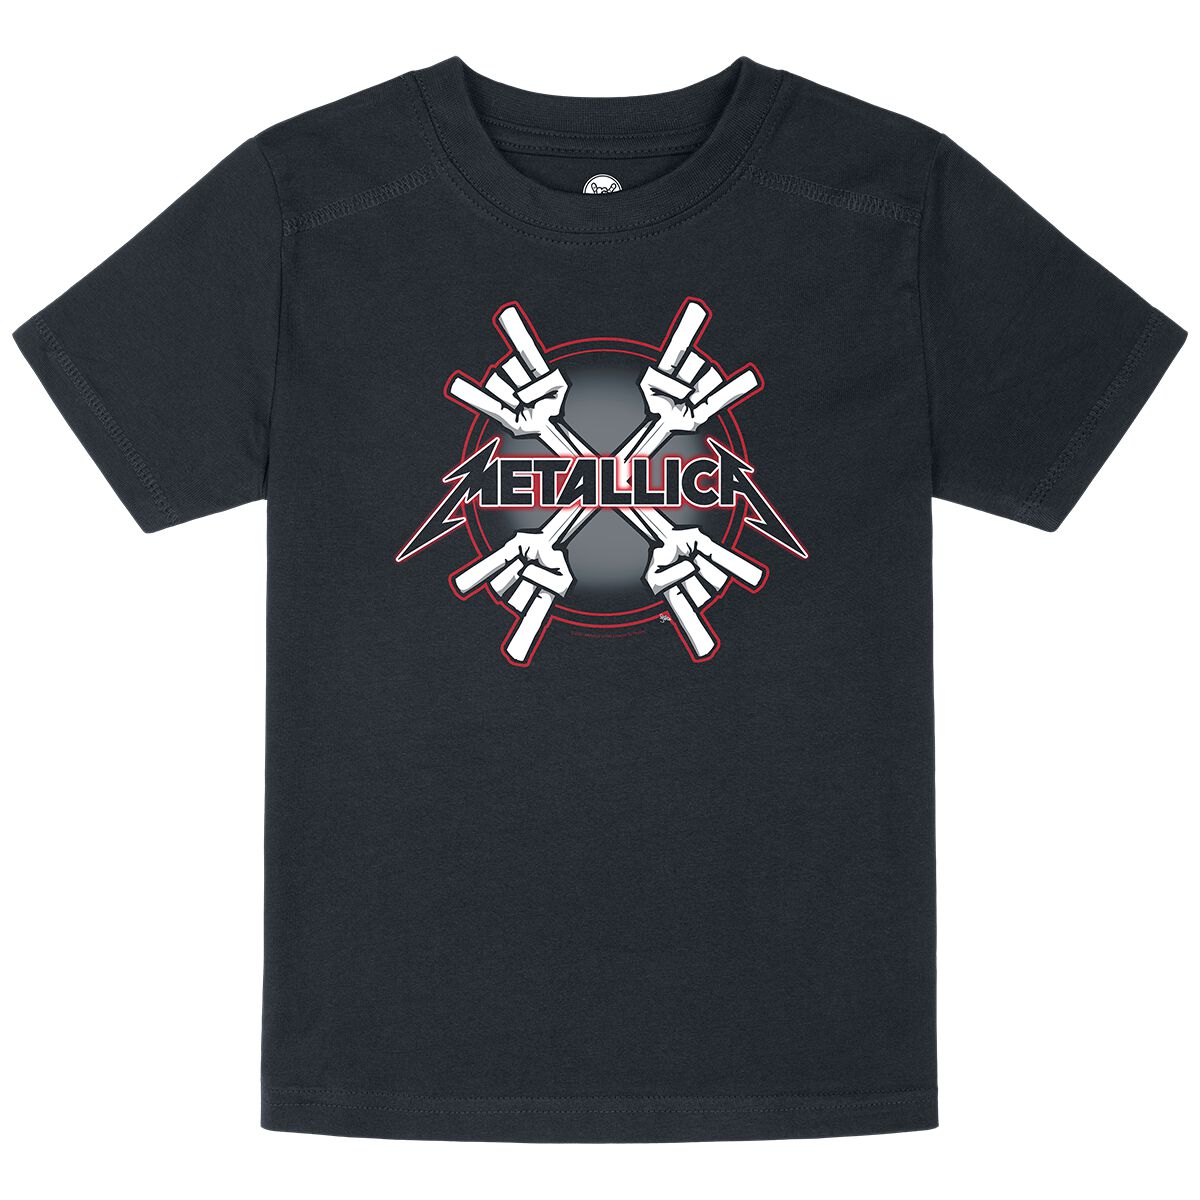 Metallica T-Shirt für Kleinkinder - Metal-Kids - Crosshorns - für Mädchen & Jungen - schwarz  - Lizenziertes Merchandise!